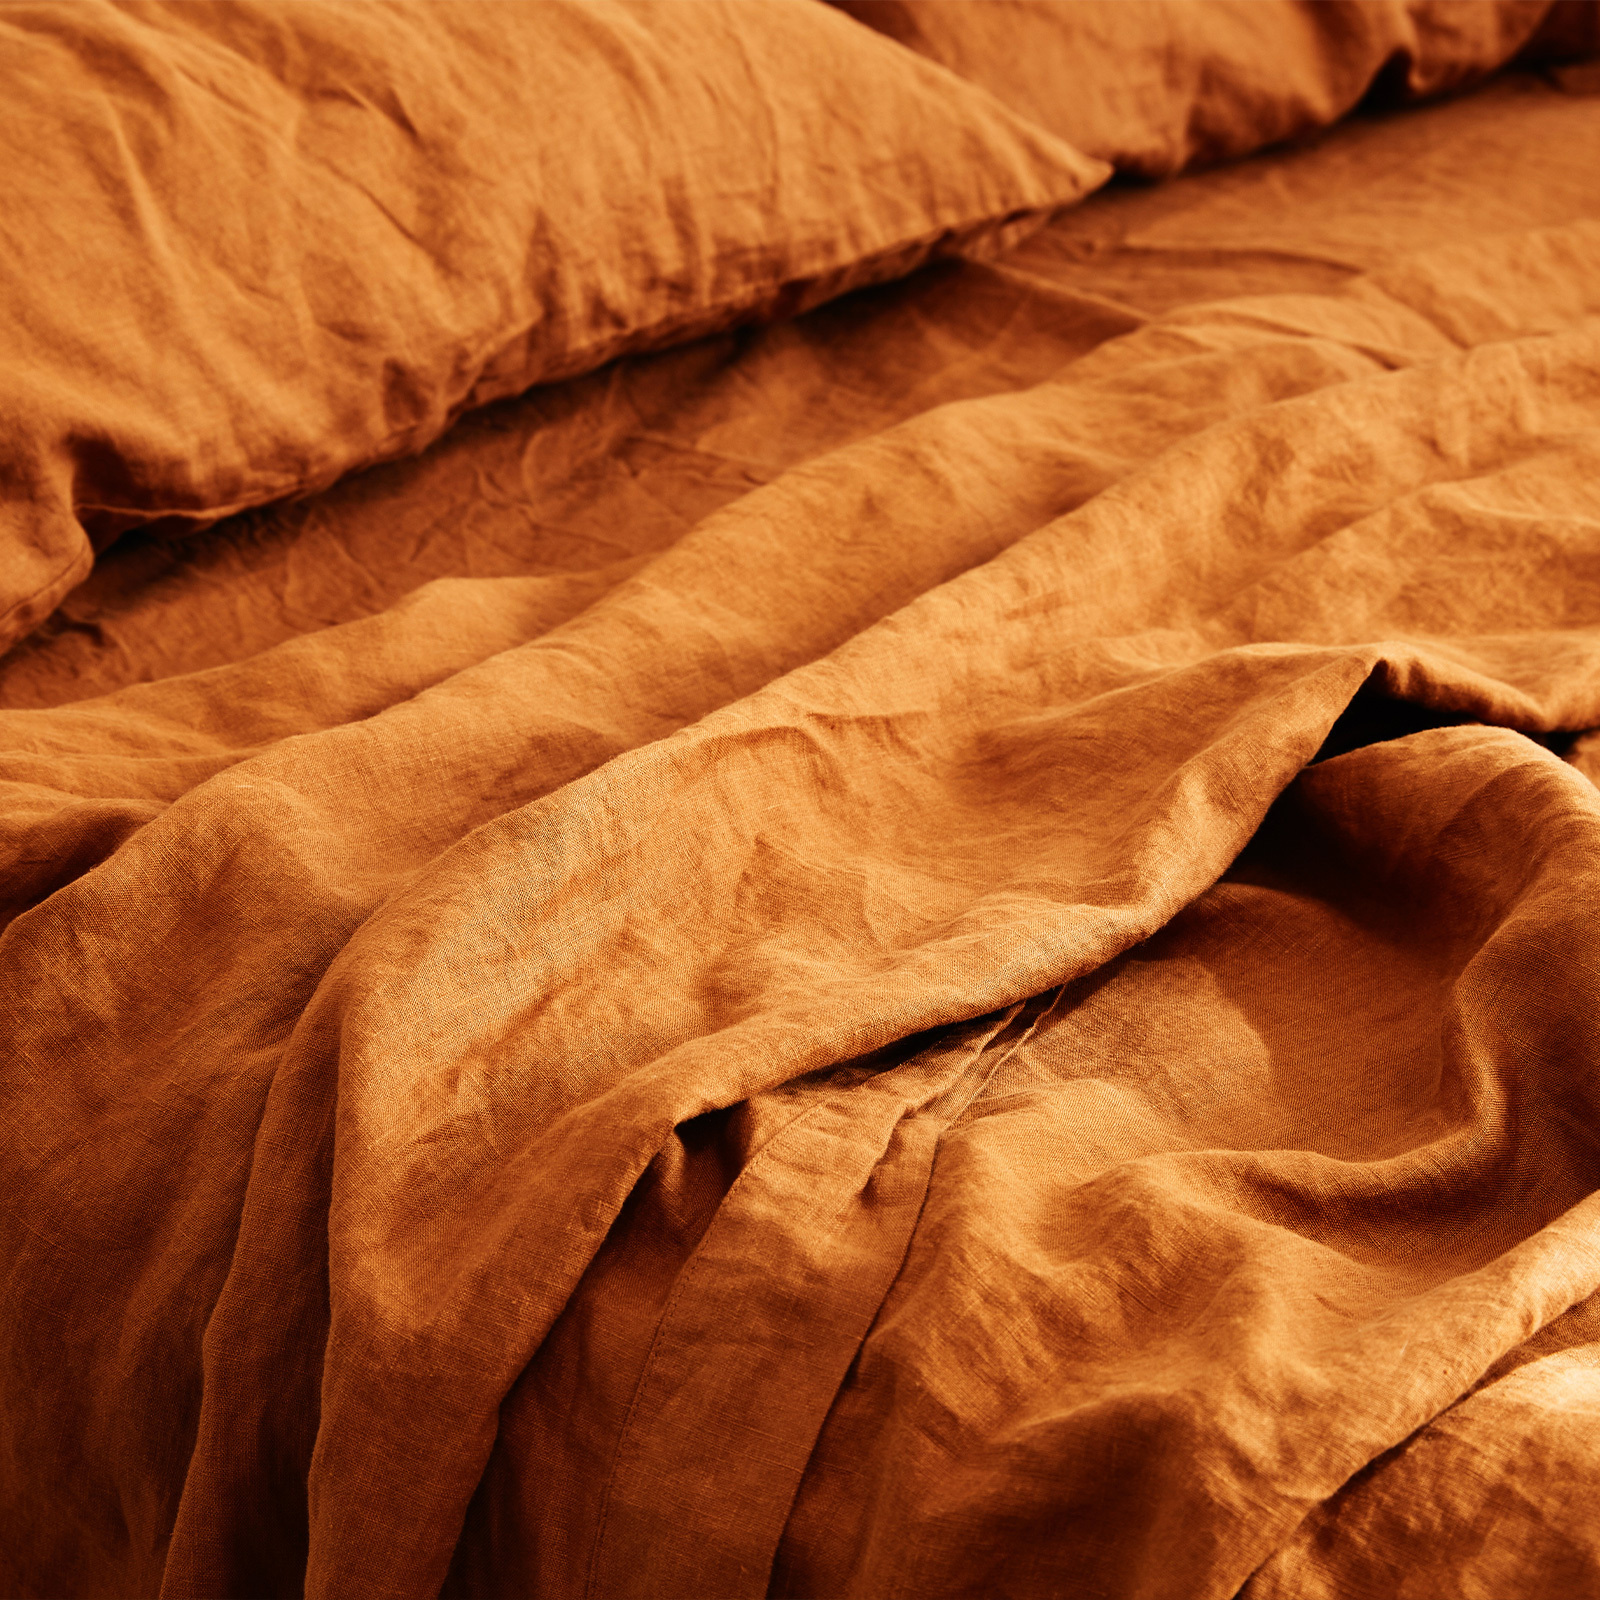 French linen flat sheet in Ochre